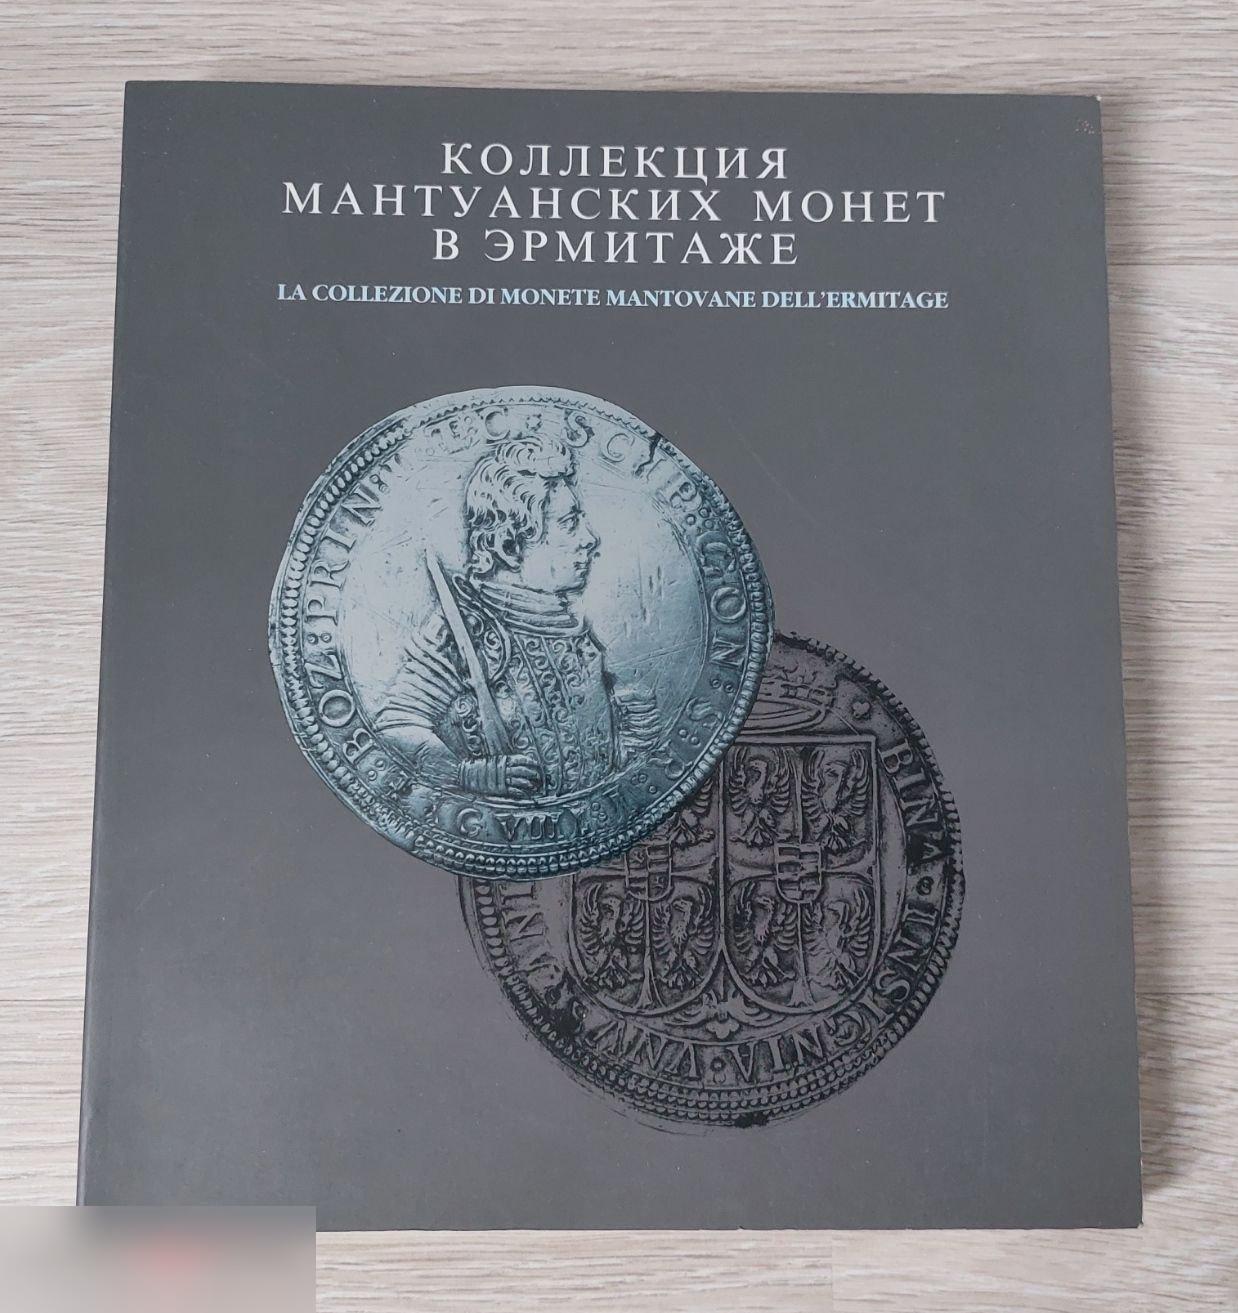 Справочник, Книга, Каталог, Коллекция Мантуанских Монет в Эрмитаже, 1995 год, 276 страниц